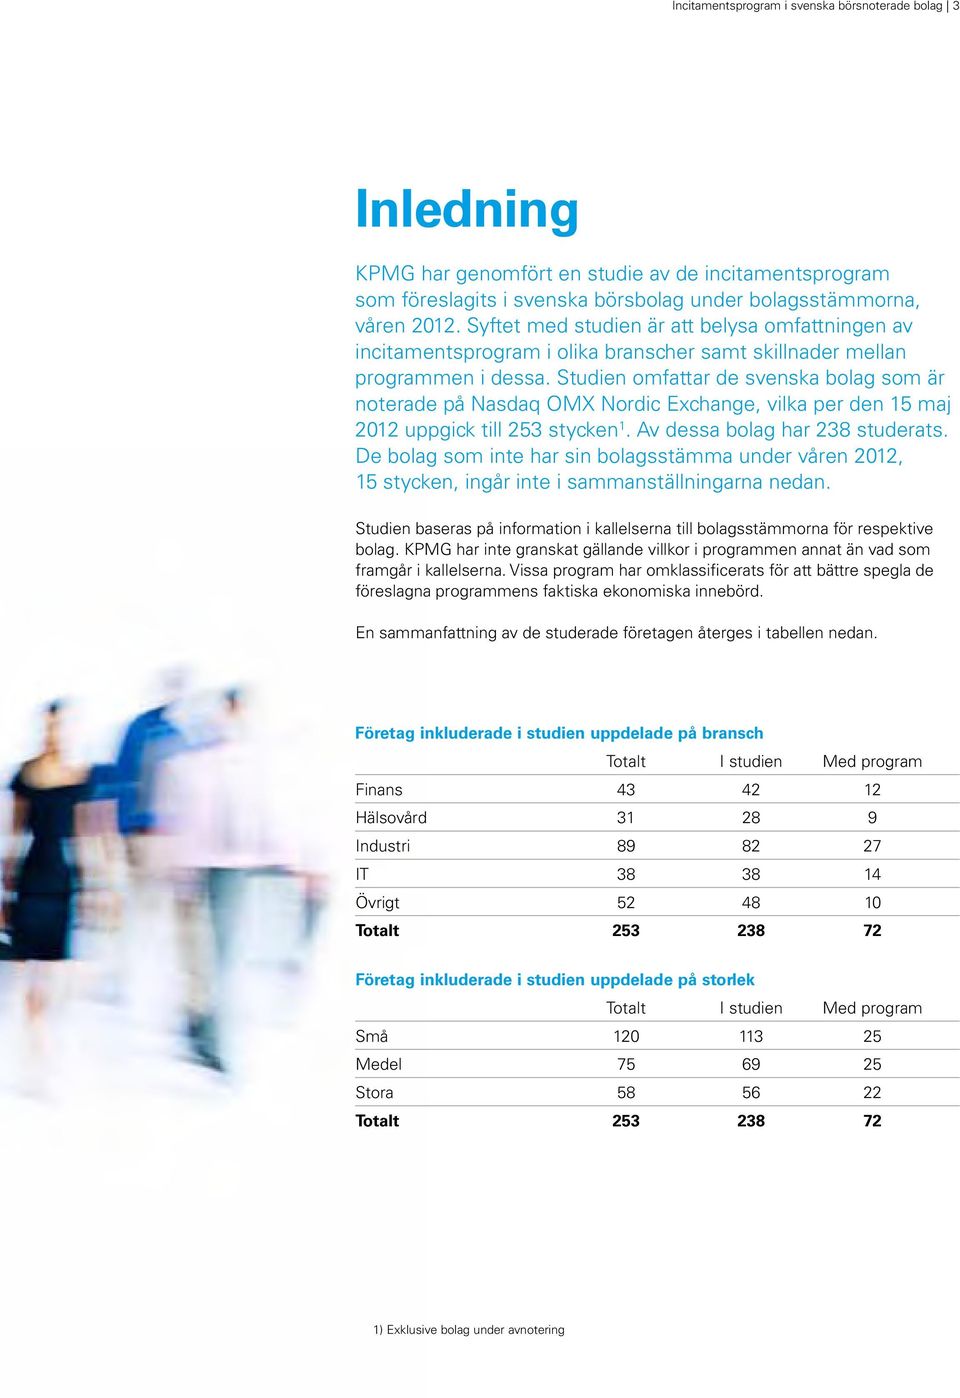 Studien omfattar de svenska bolag som är noterade på Nasdaq OMX Nordic Exchange, vilka per den 15 maj 2012 uppgick till 253 stycken 1. Av dessa bolag har 238 studerats.